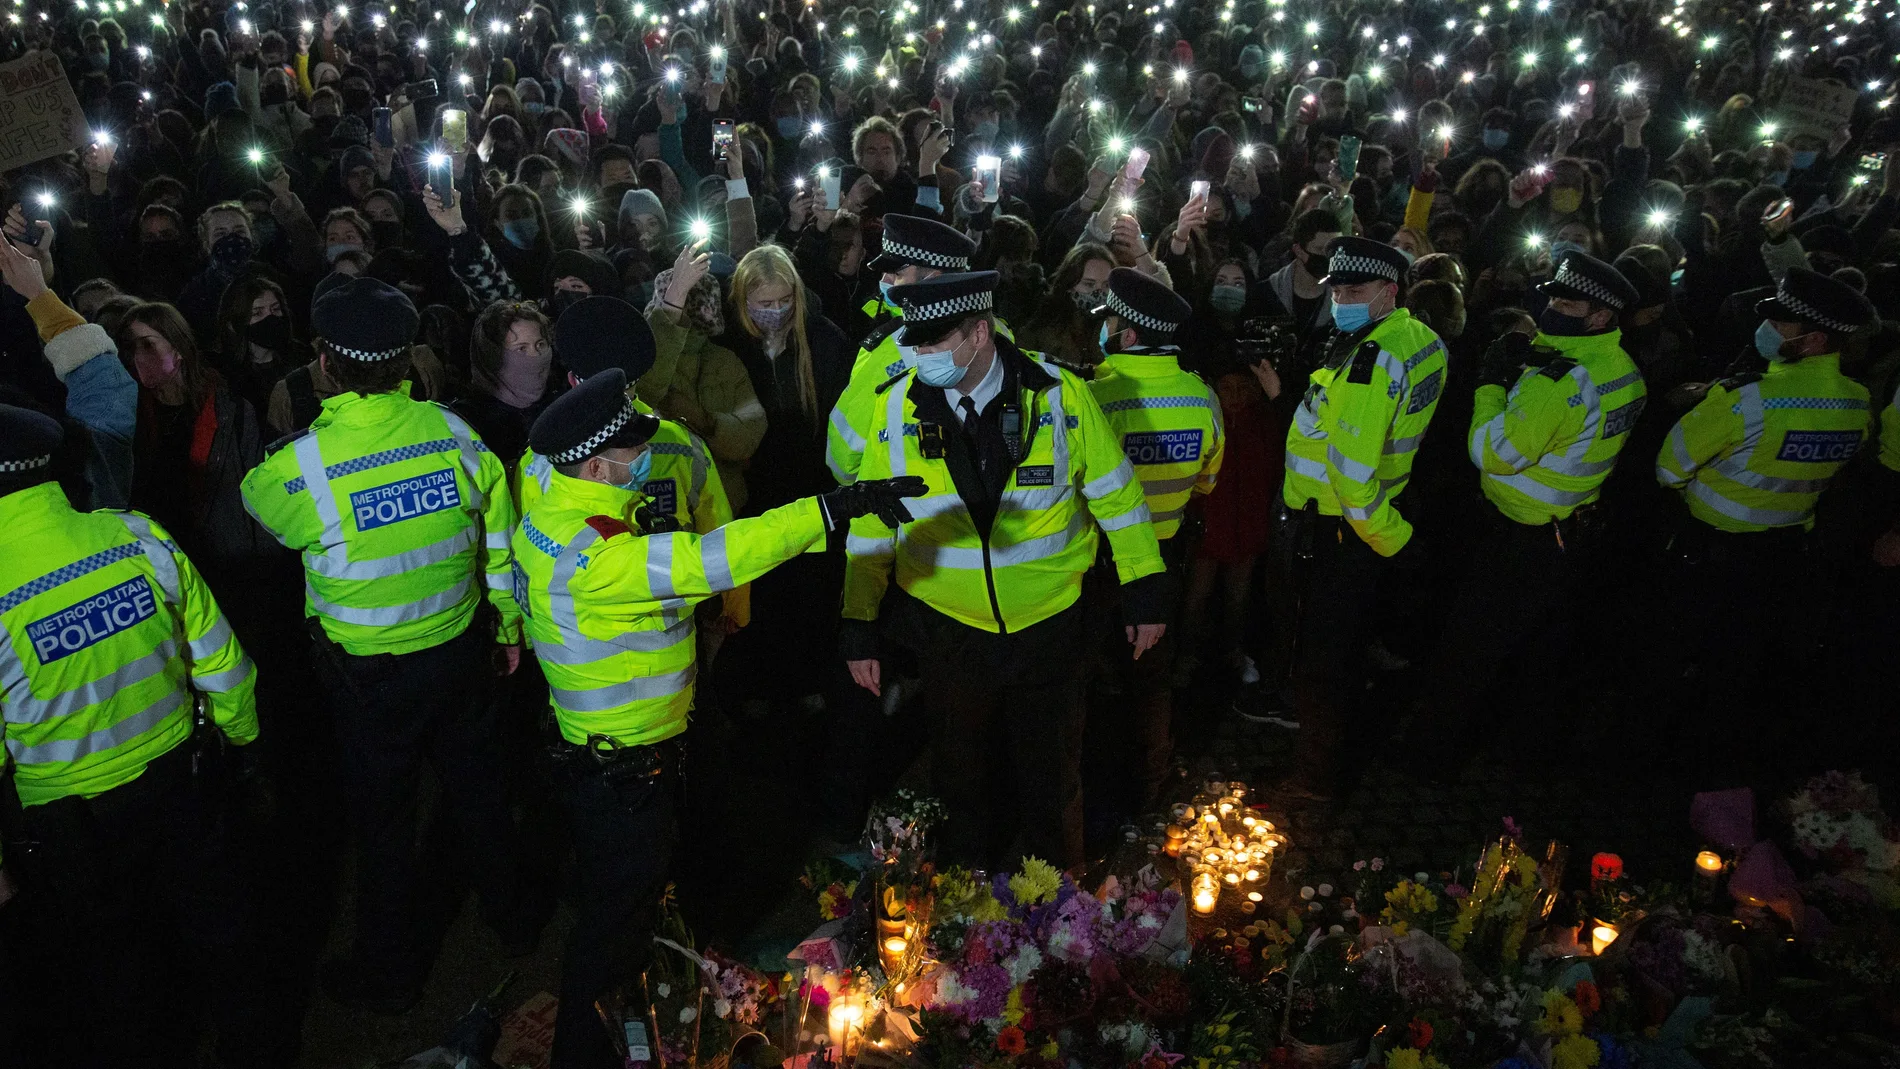 Los asistentes a una vigilia en memoria de Sarah Everard encienden las linternas de sus teléfonos móviles tras un cordón formado por agentes de la Policía Metropolitana de Londres (MET) , la noche del sábado en Clapham Common, Londres.